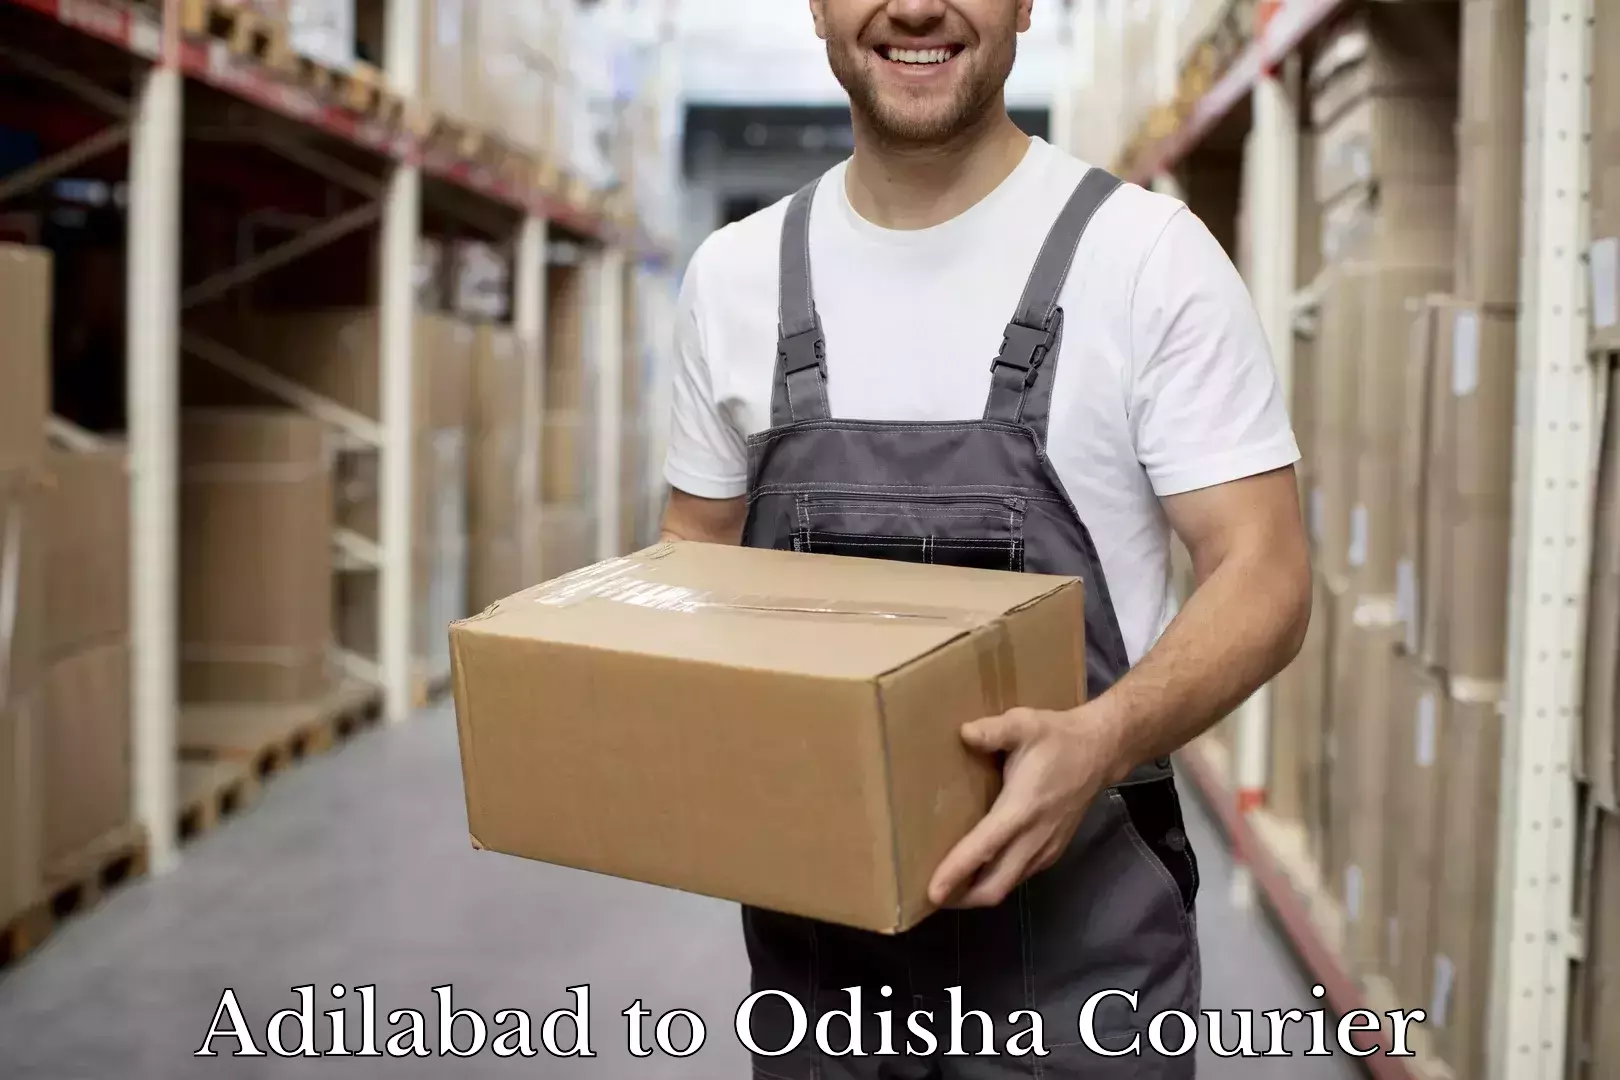 Luggage shipment tracking Adilabad to Odisha